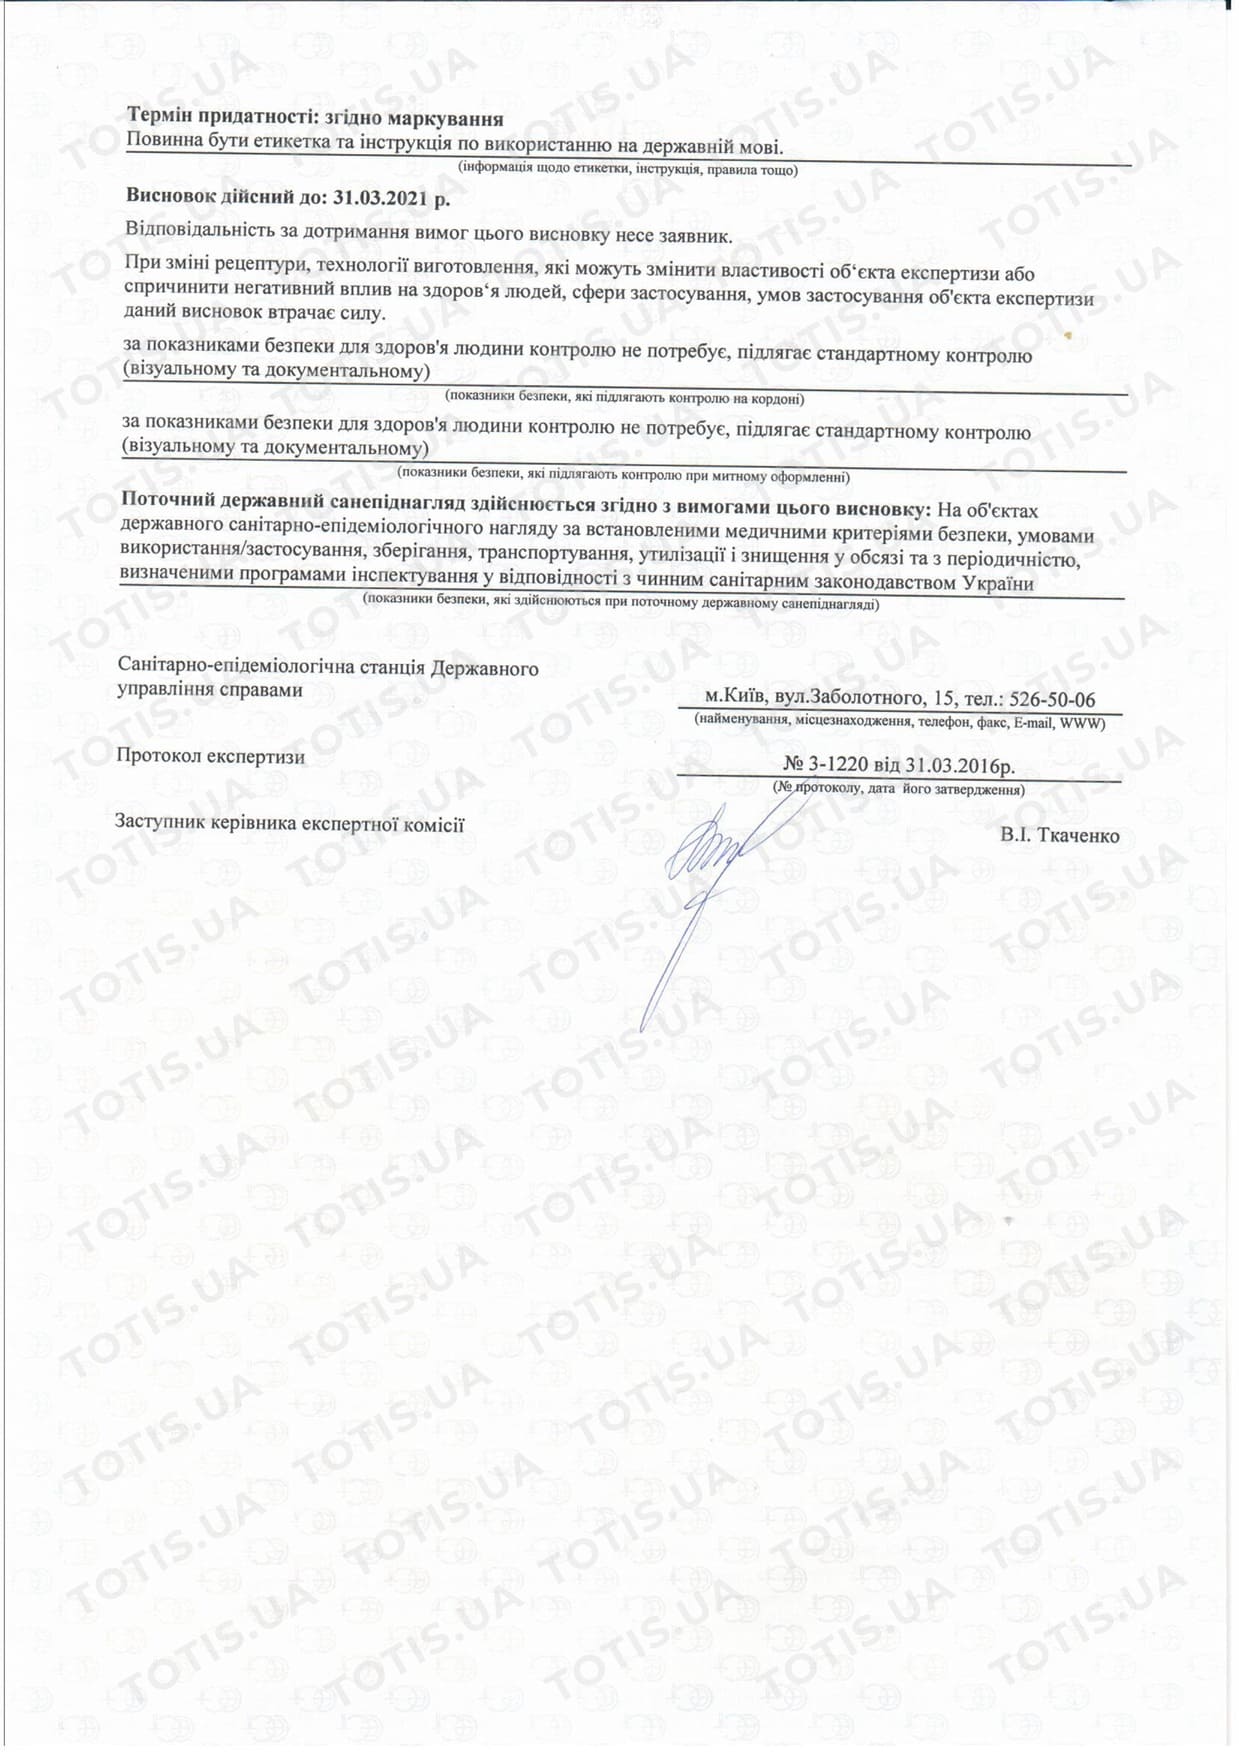 Сертификат препаратов Simildiet в Украине - изображение 2